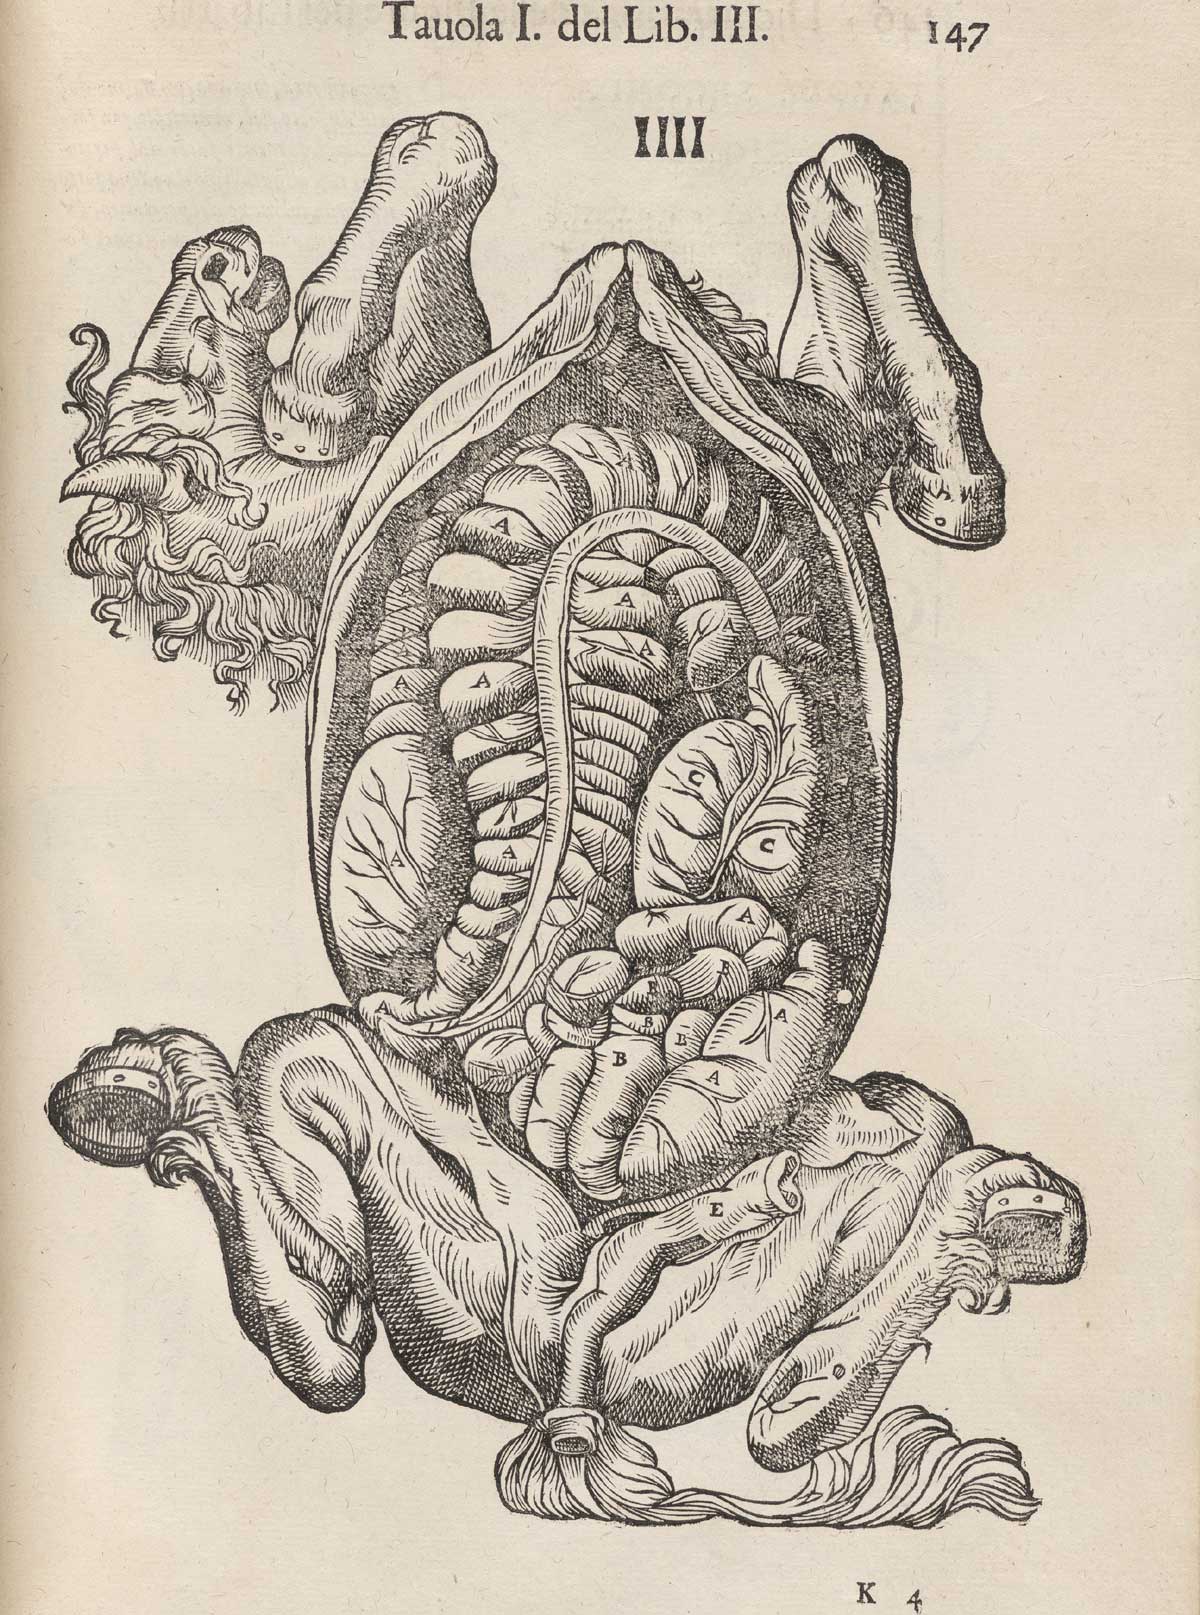 Page 147 of Ruini's Anatomia del cavallo, infermità, et suoi rimedii, featuring the underneath of a horse with the abdominal cavity exposed.